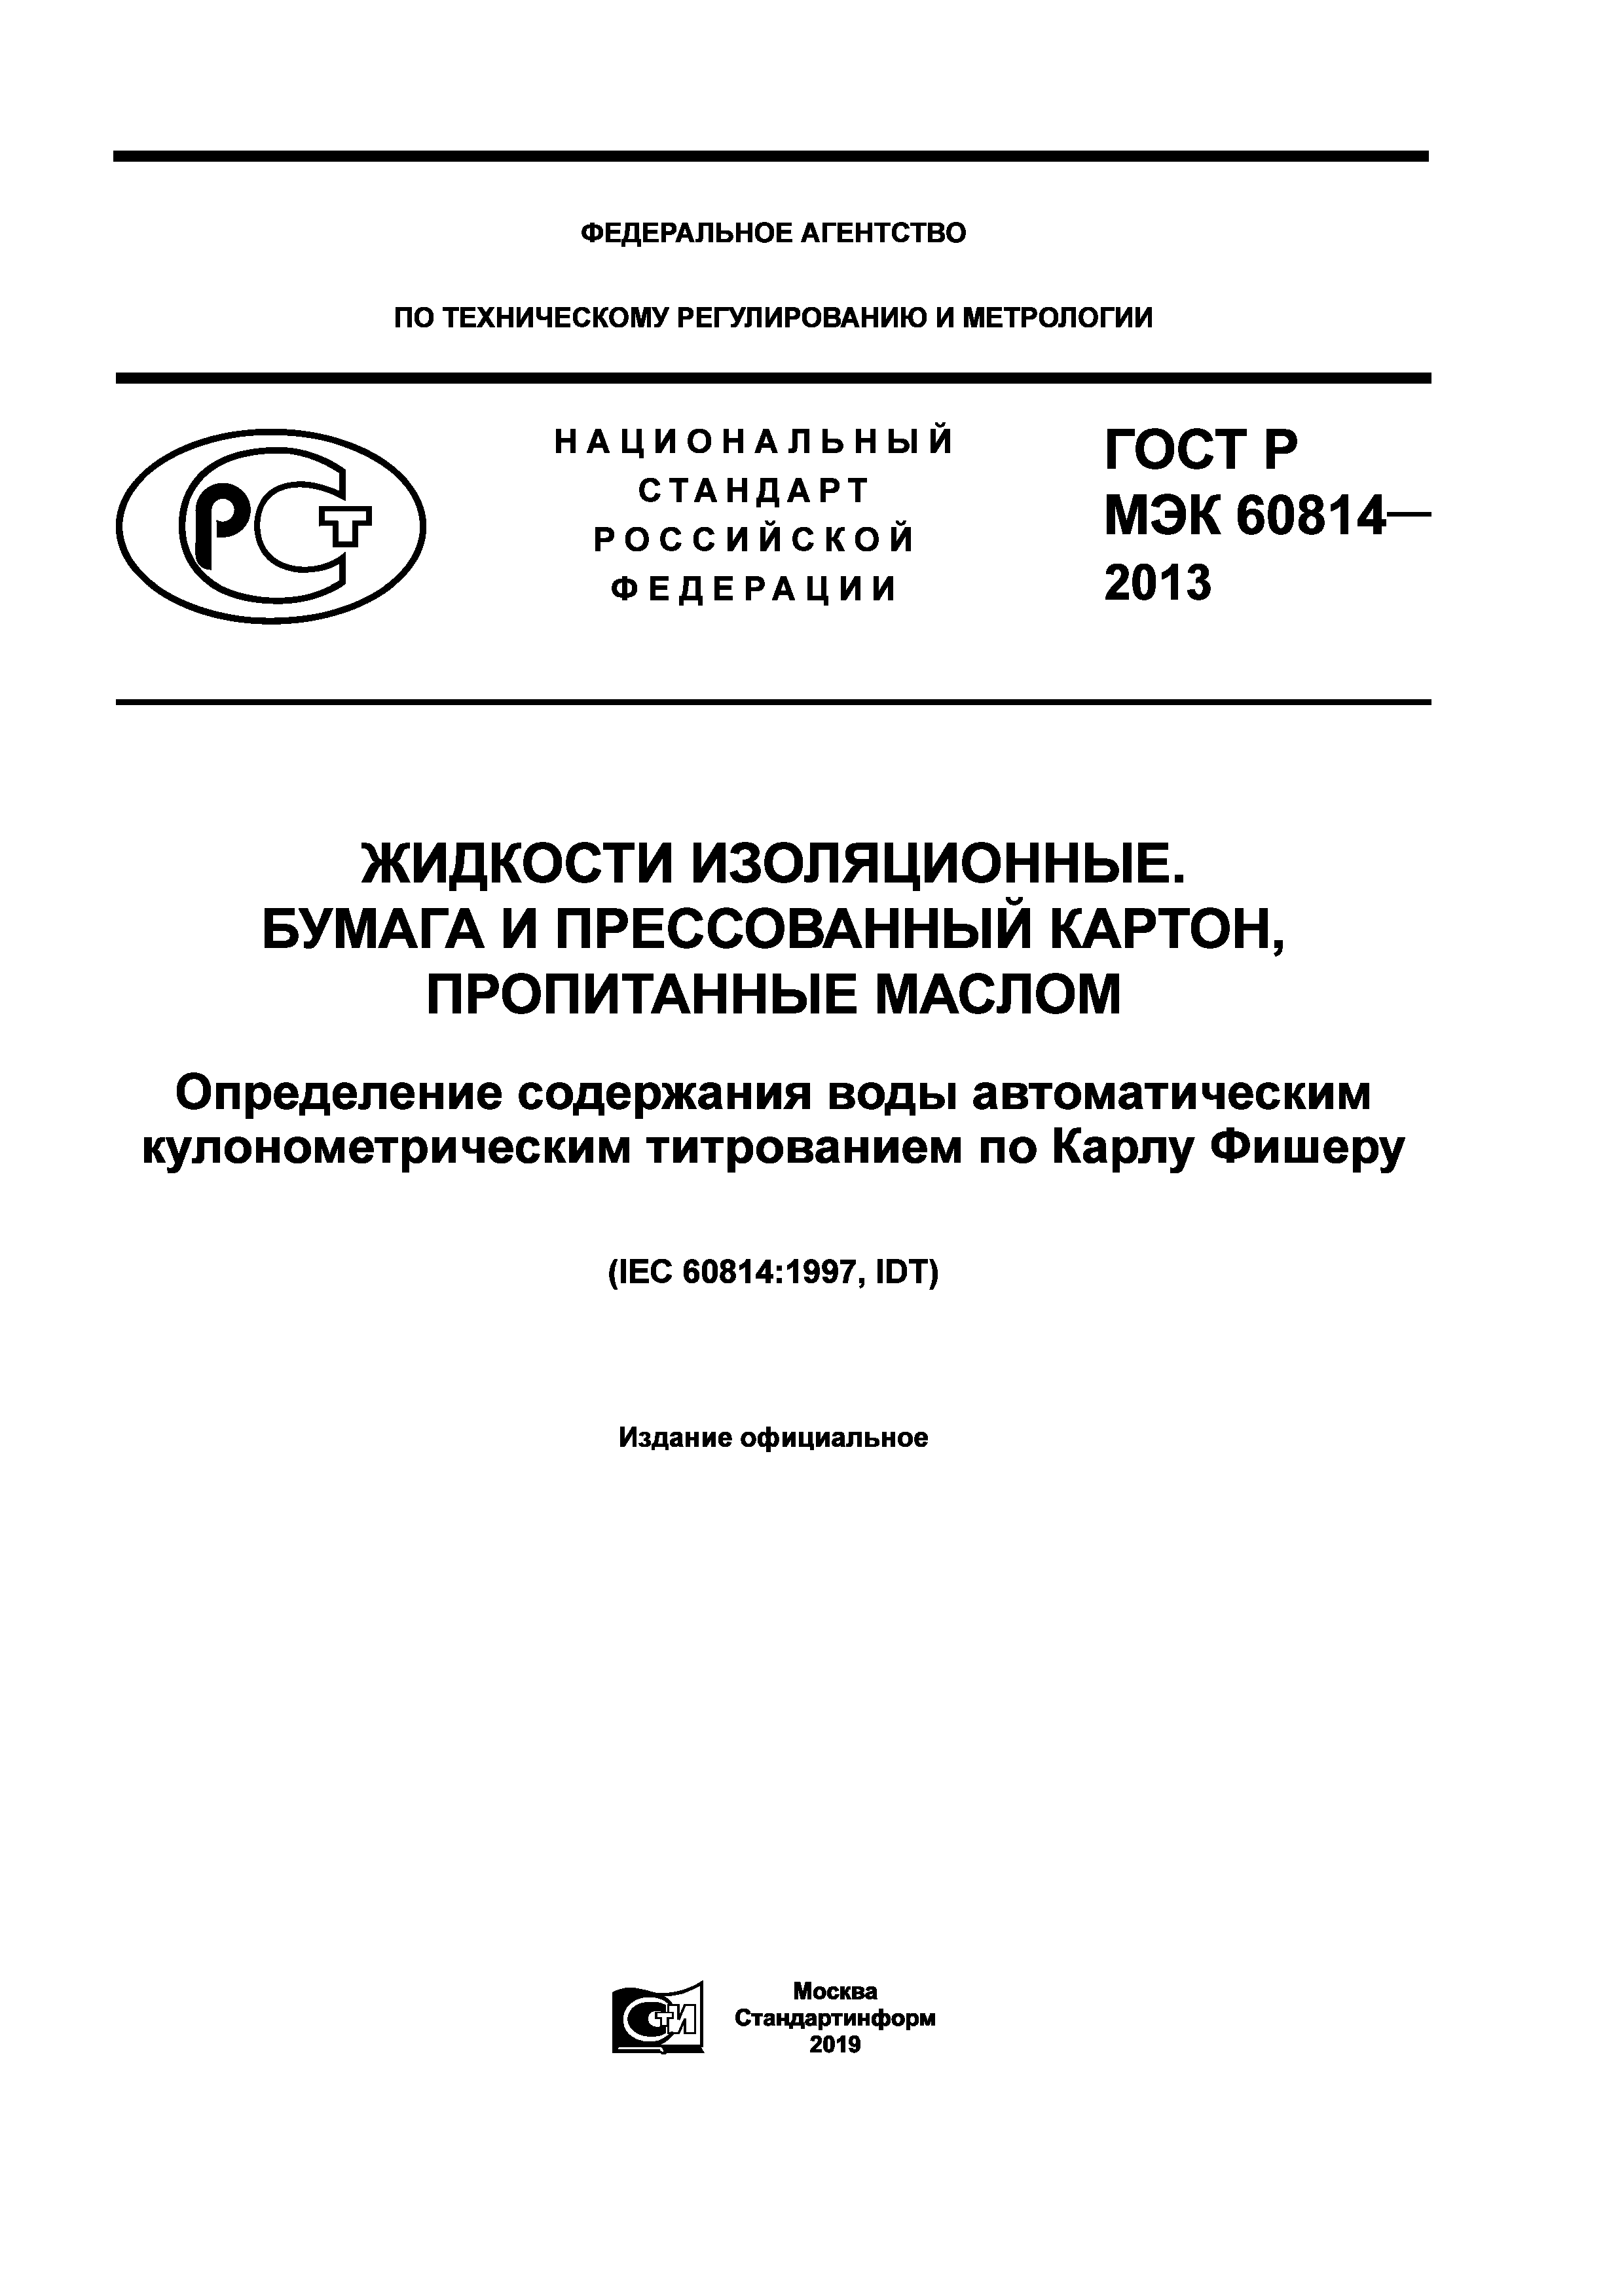 ГОСТ Р МЭК 60814-2013